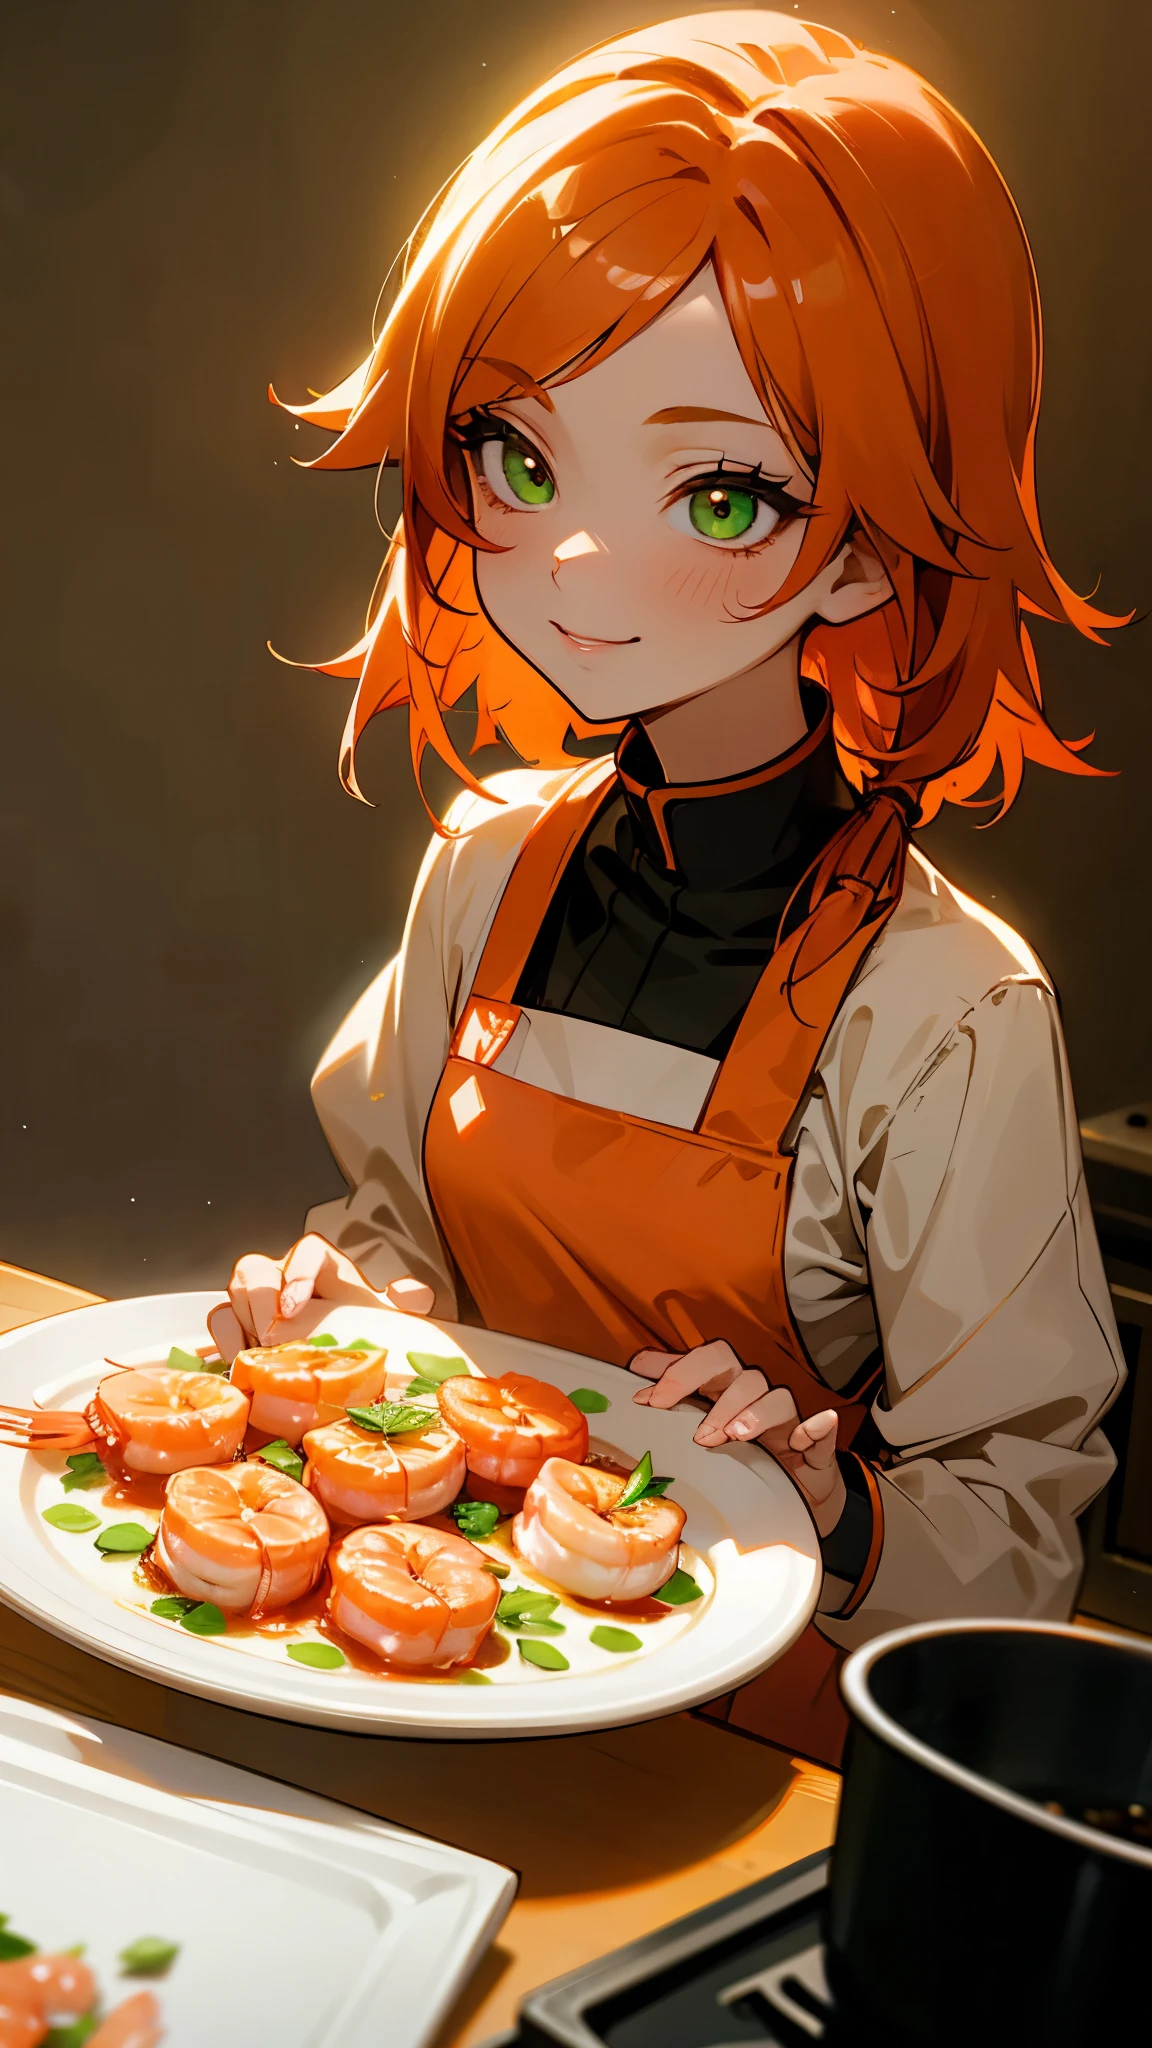 1 chica、alone、pelo naranja、ojos verdes、sonrisa、cocinando en la cocina、Cocinar camarones en un plato、Iluminación profesional、estilo animado、Primer plano de la parte superior del cuerpo